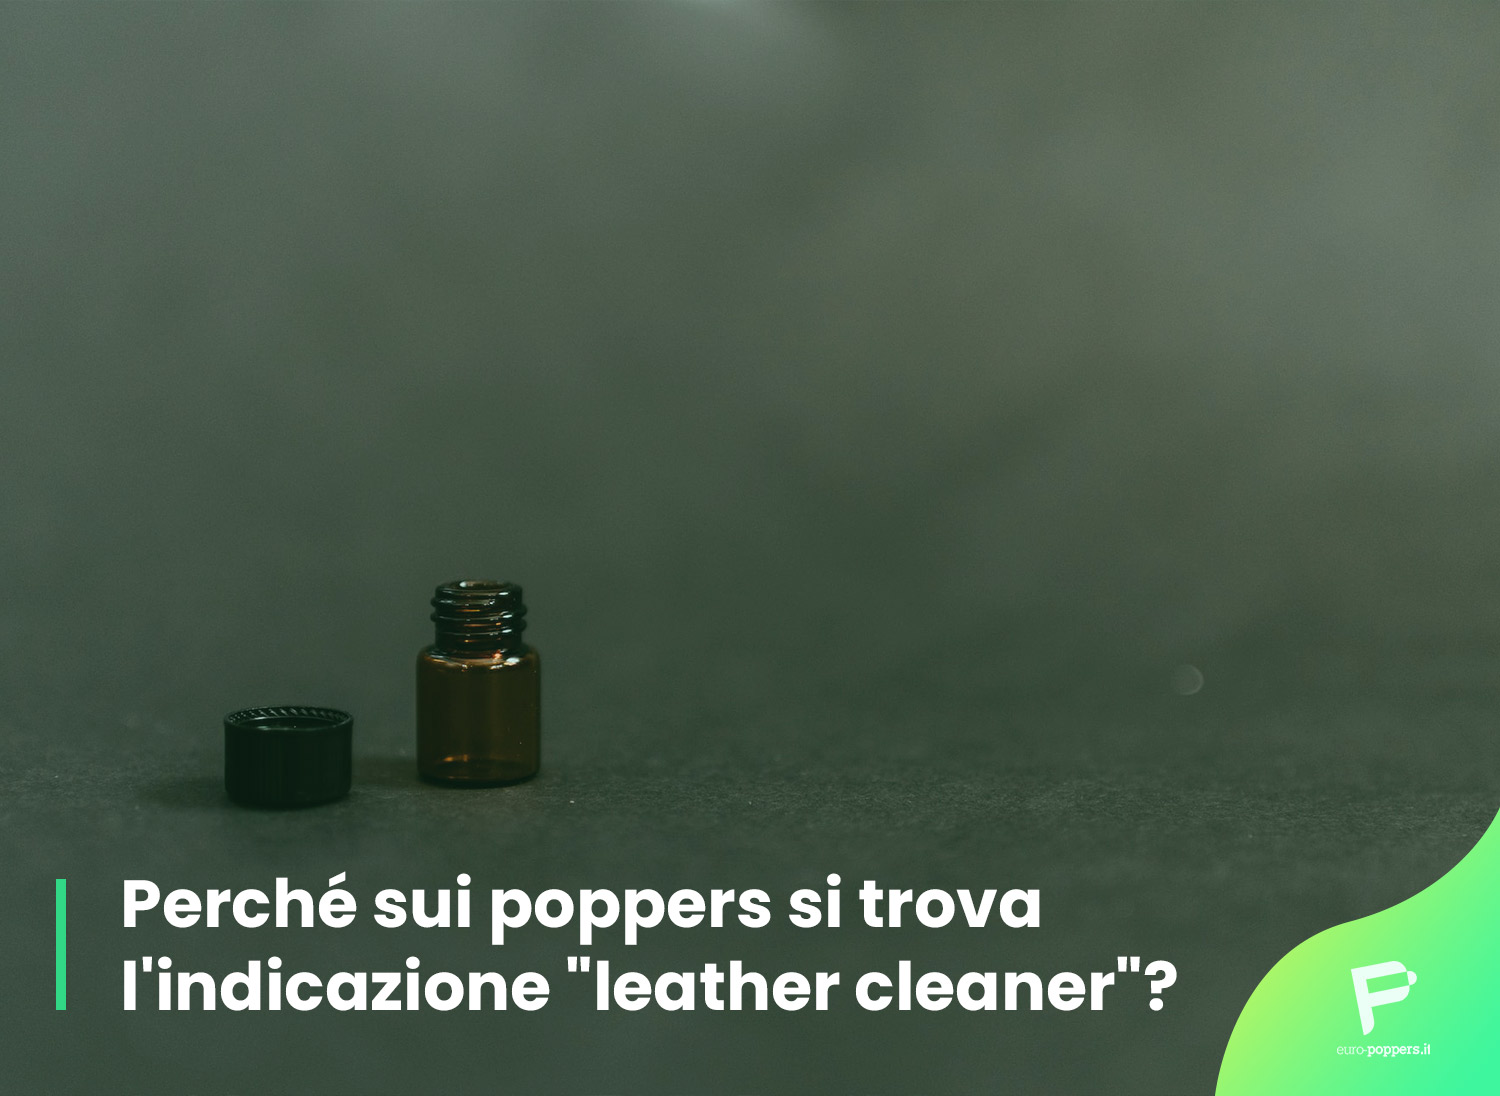 Al momento stai visualizzando Perché sui poppers si trova l’indicazione “leather cleaner”?